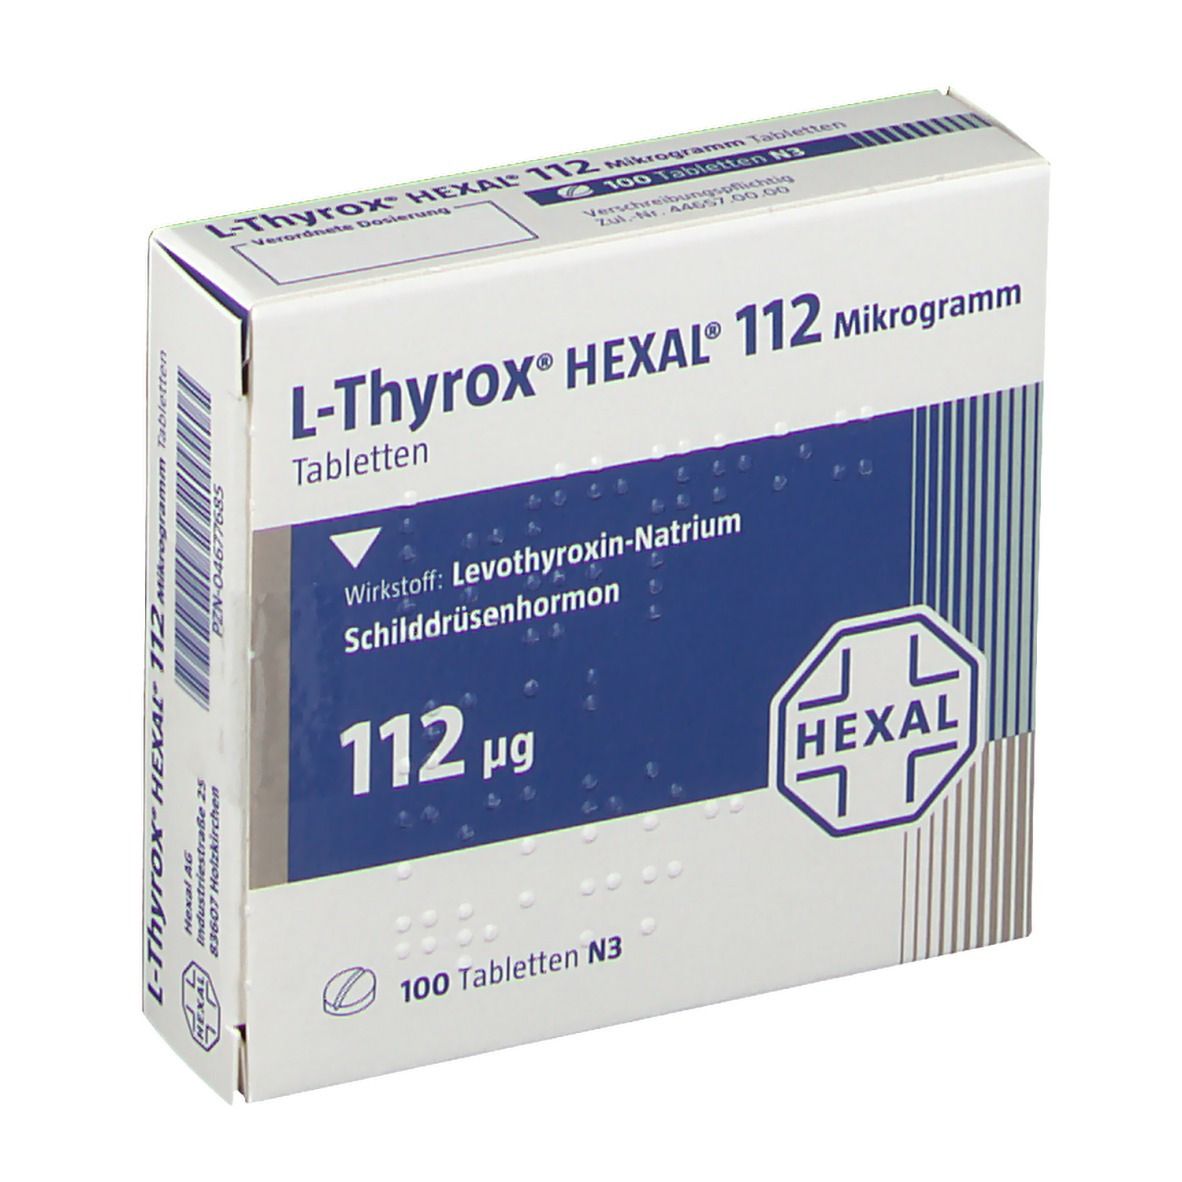 L-Thyrox® HEXAL® 112 µg